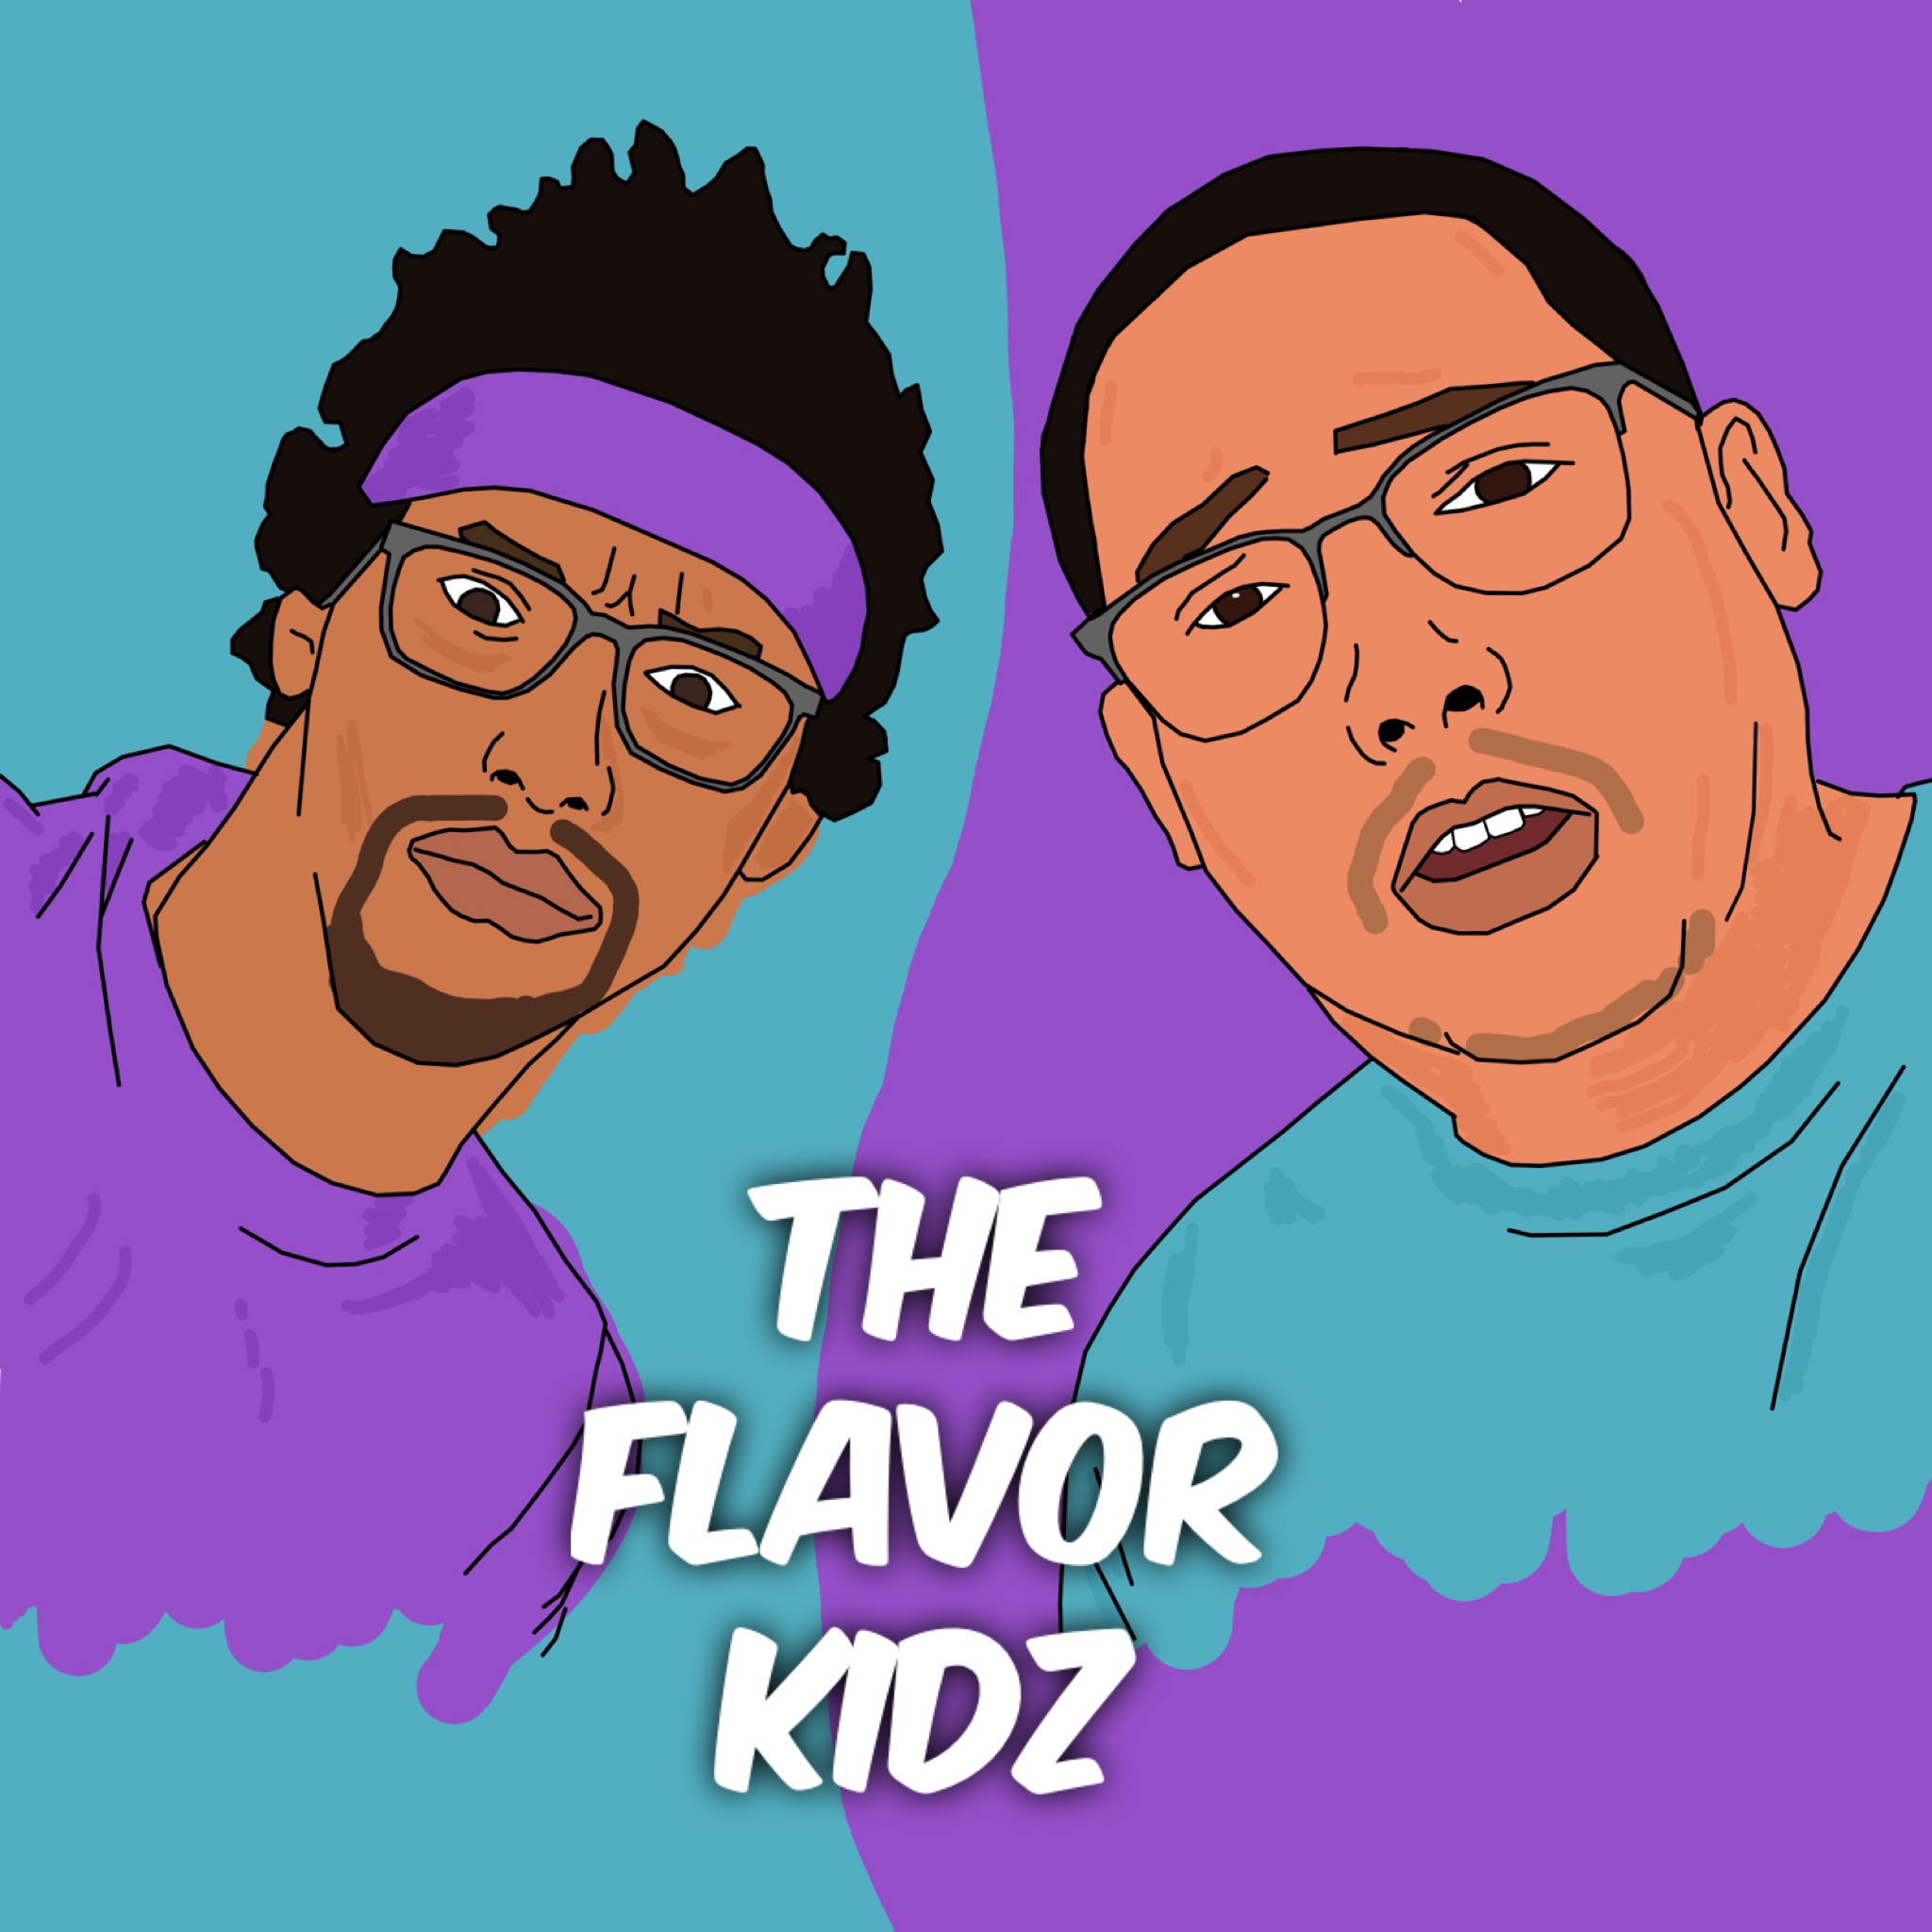 Flavor Kidz